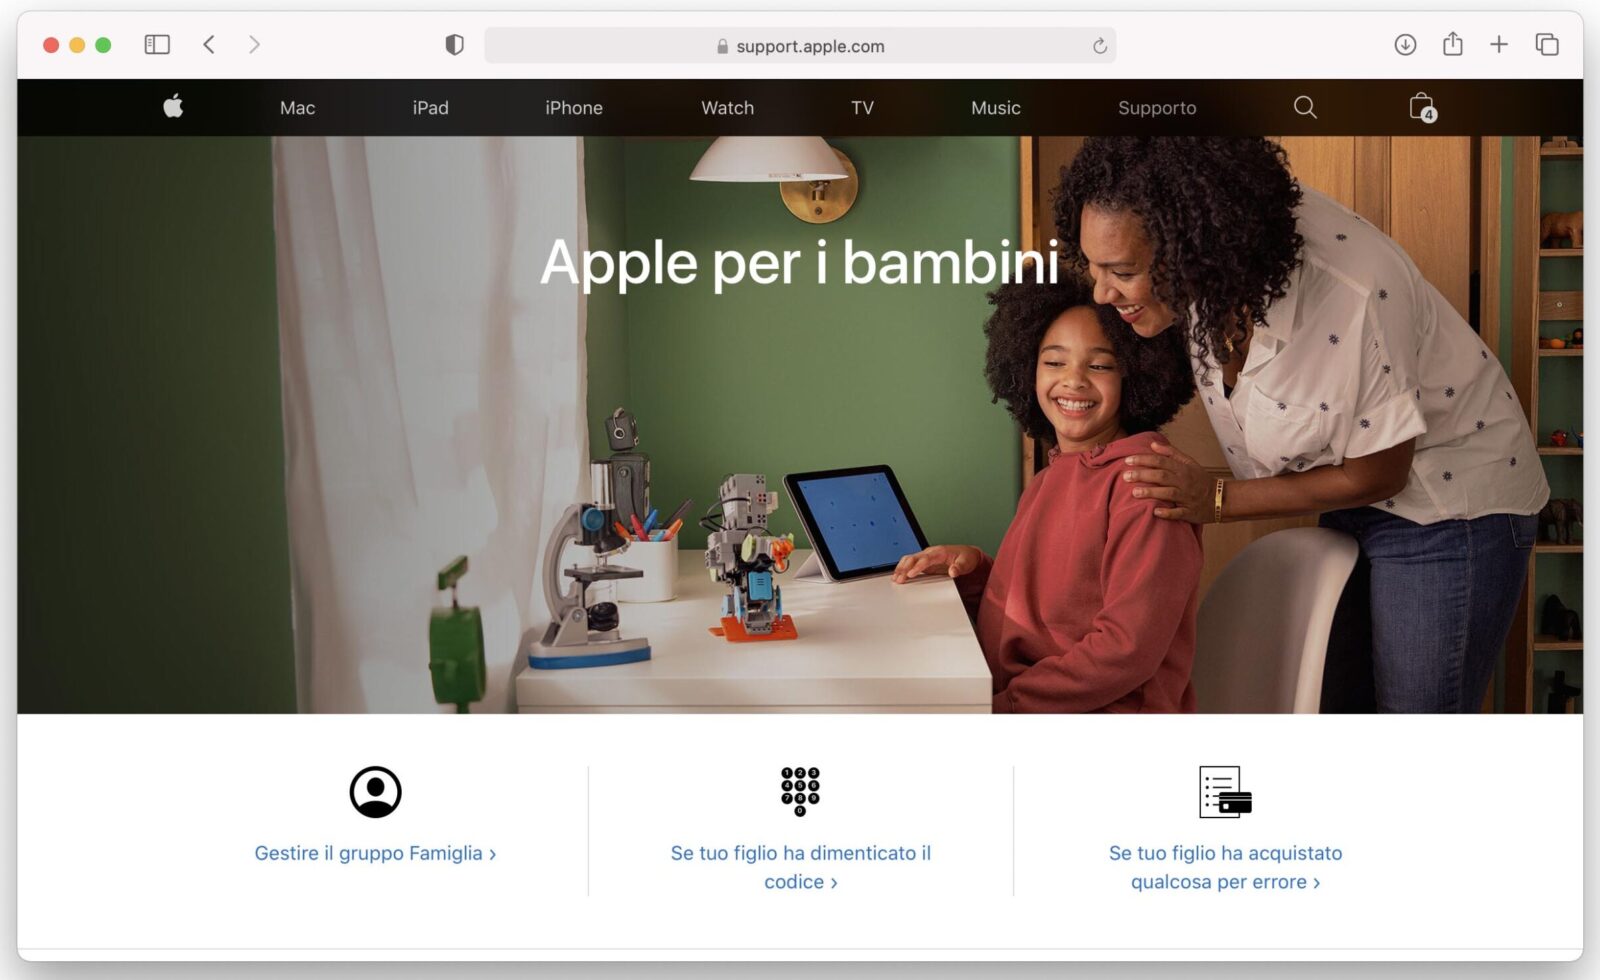 “Apple per i bambini”, nuova sezione sul sito Apple